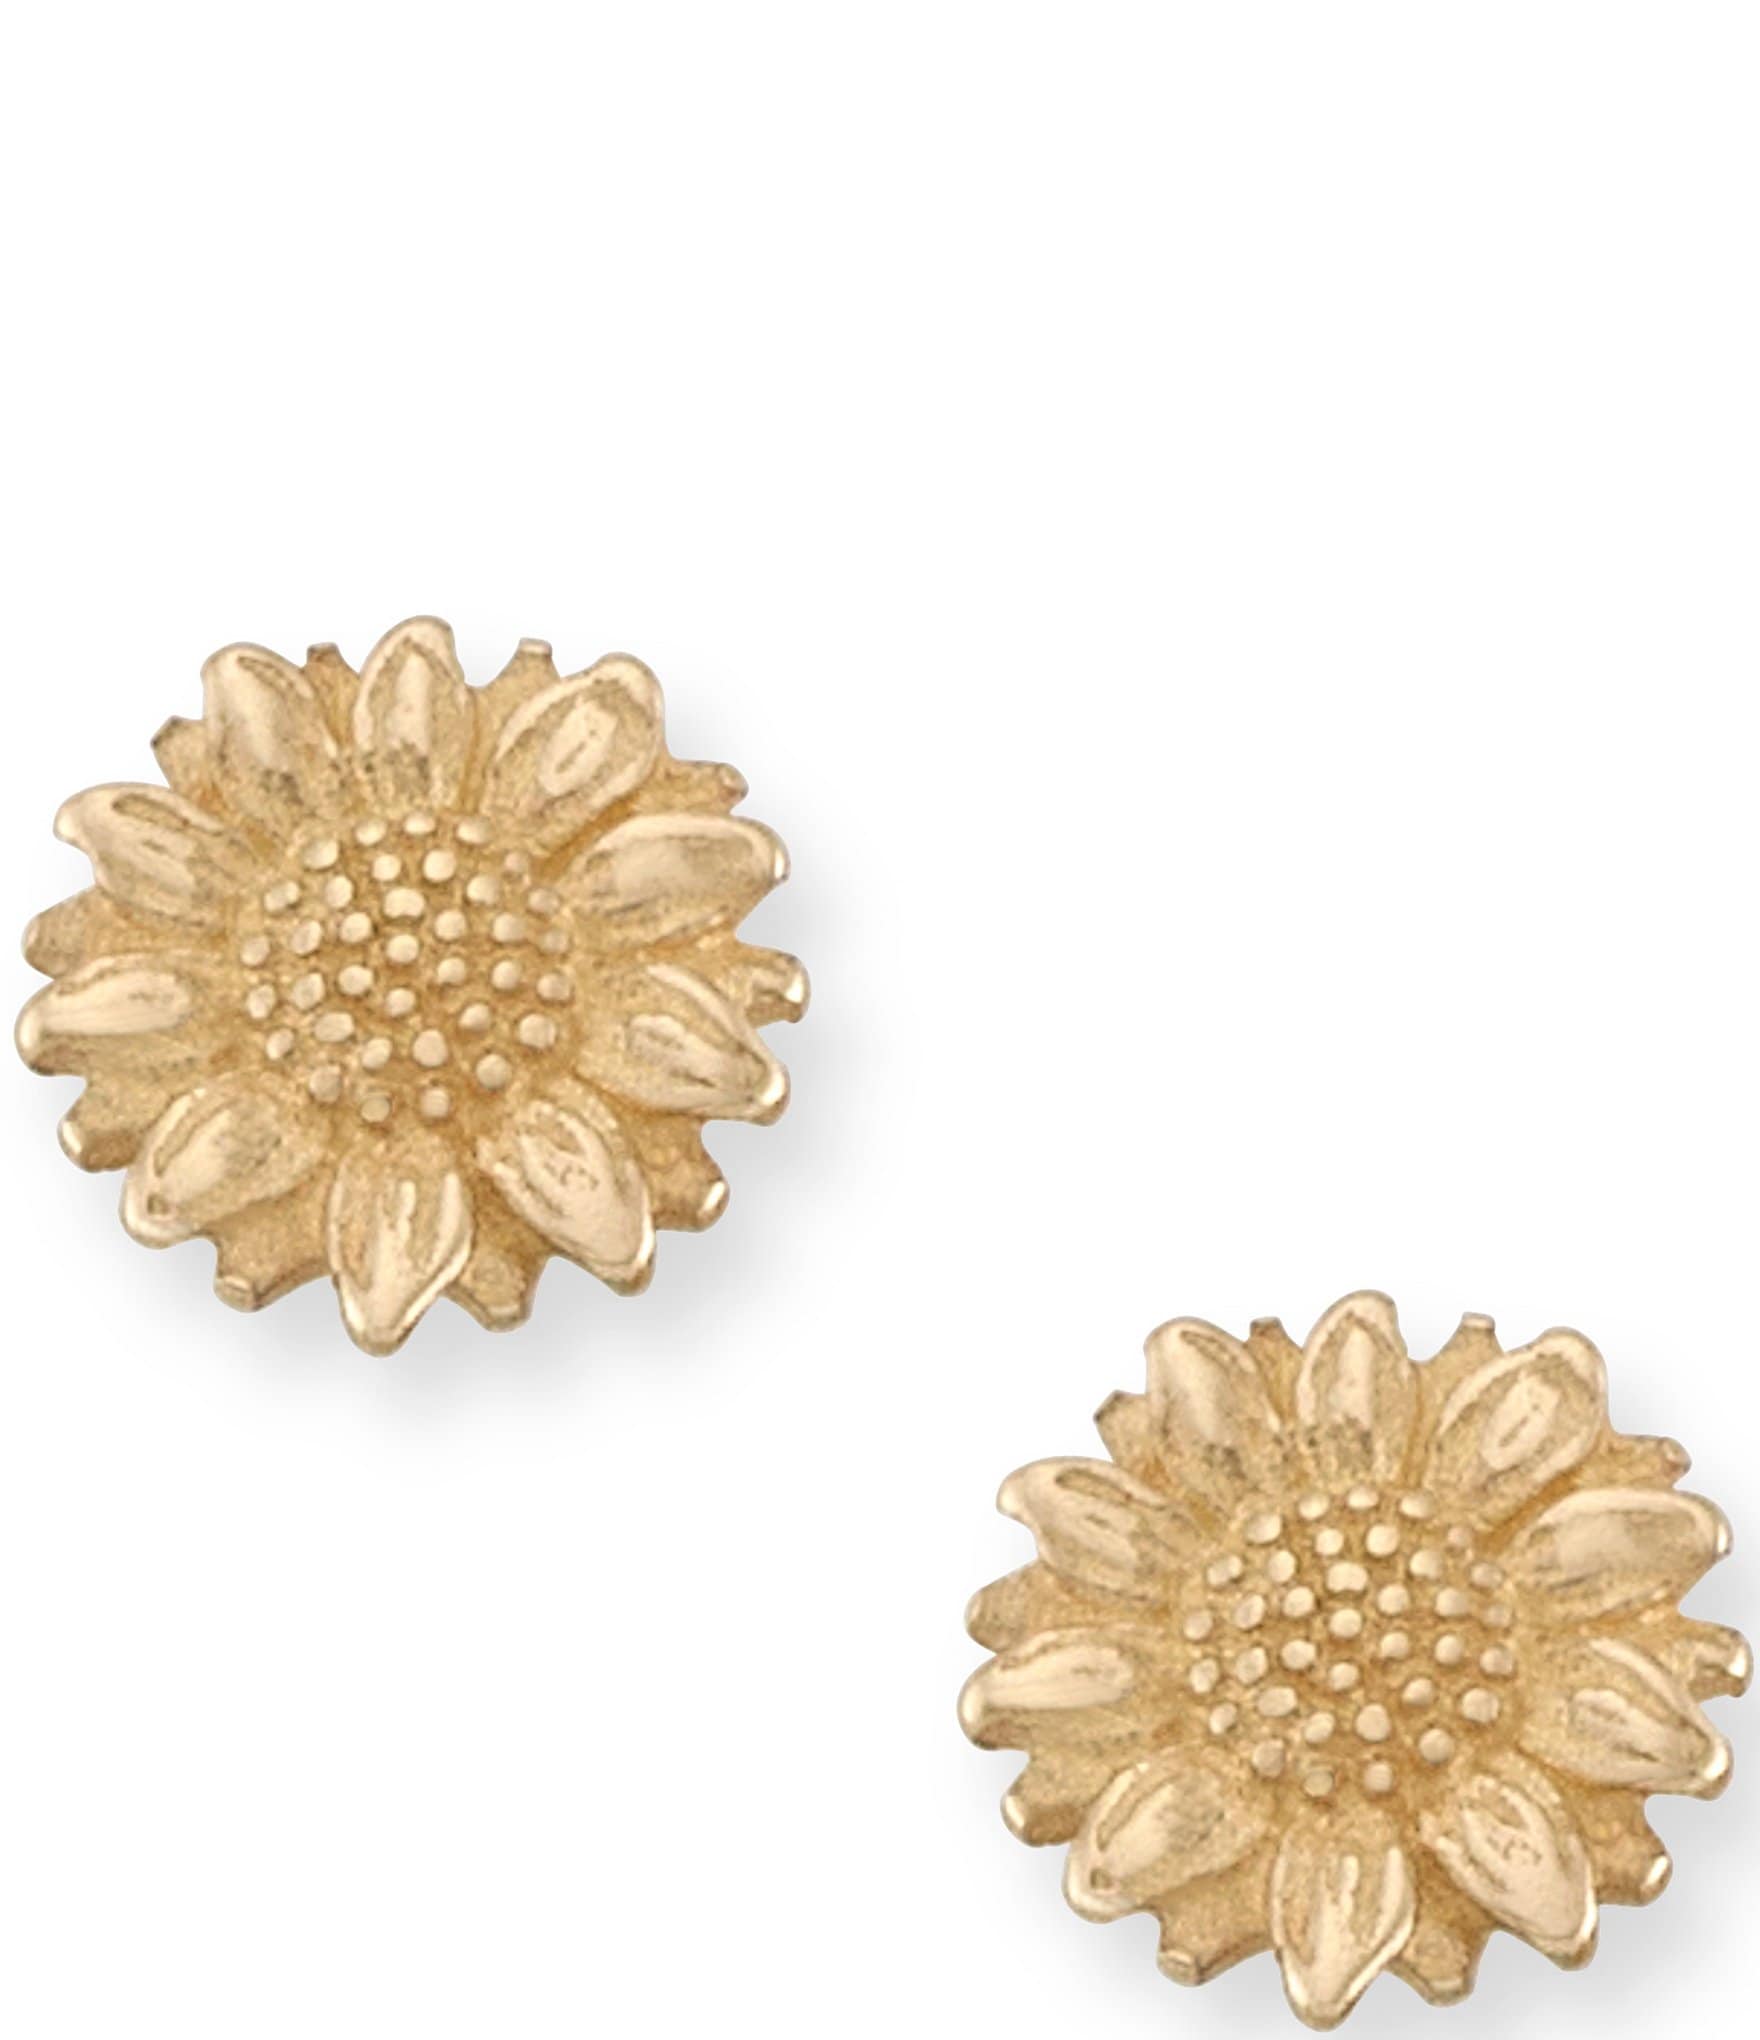 Sunflower Drop Blank Wood Earrings. DIY jewelry. Unfinished laser cut –  Wicked Gold